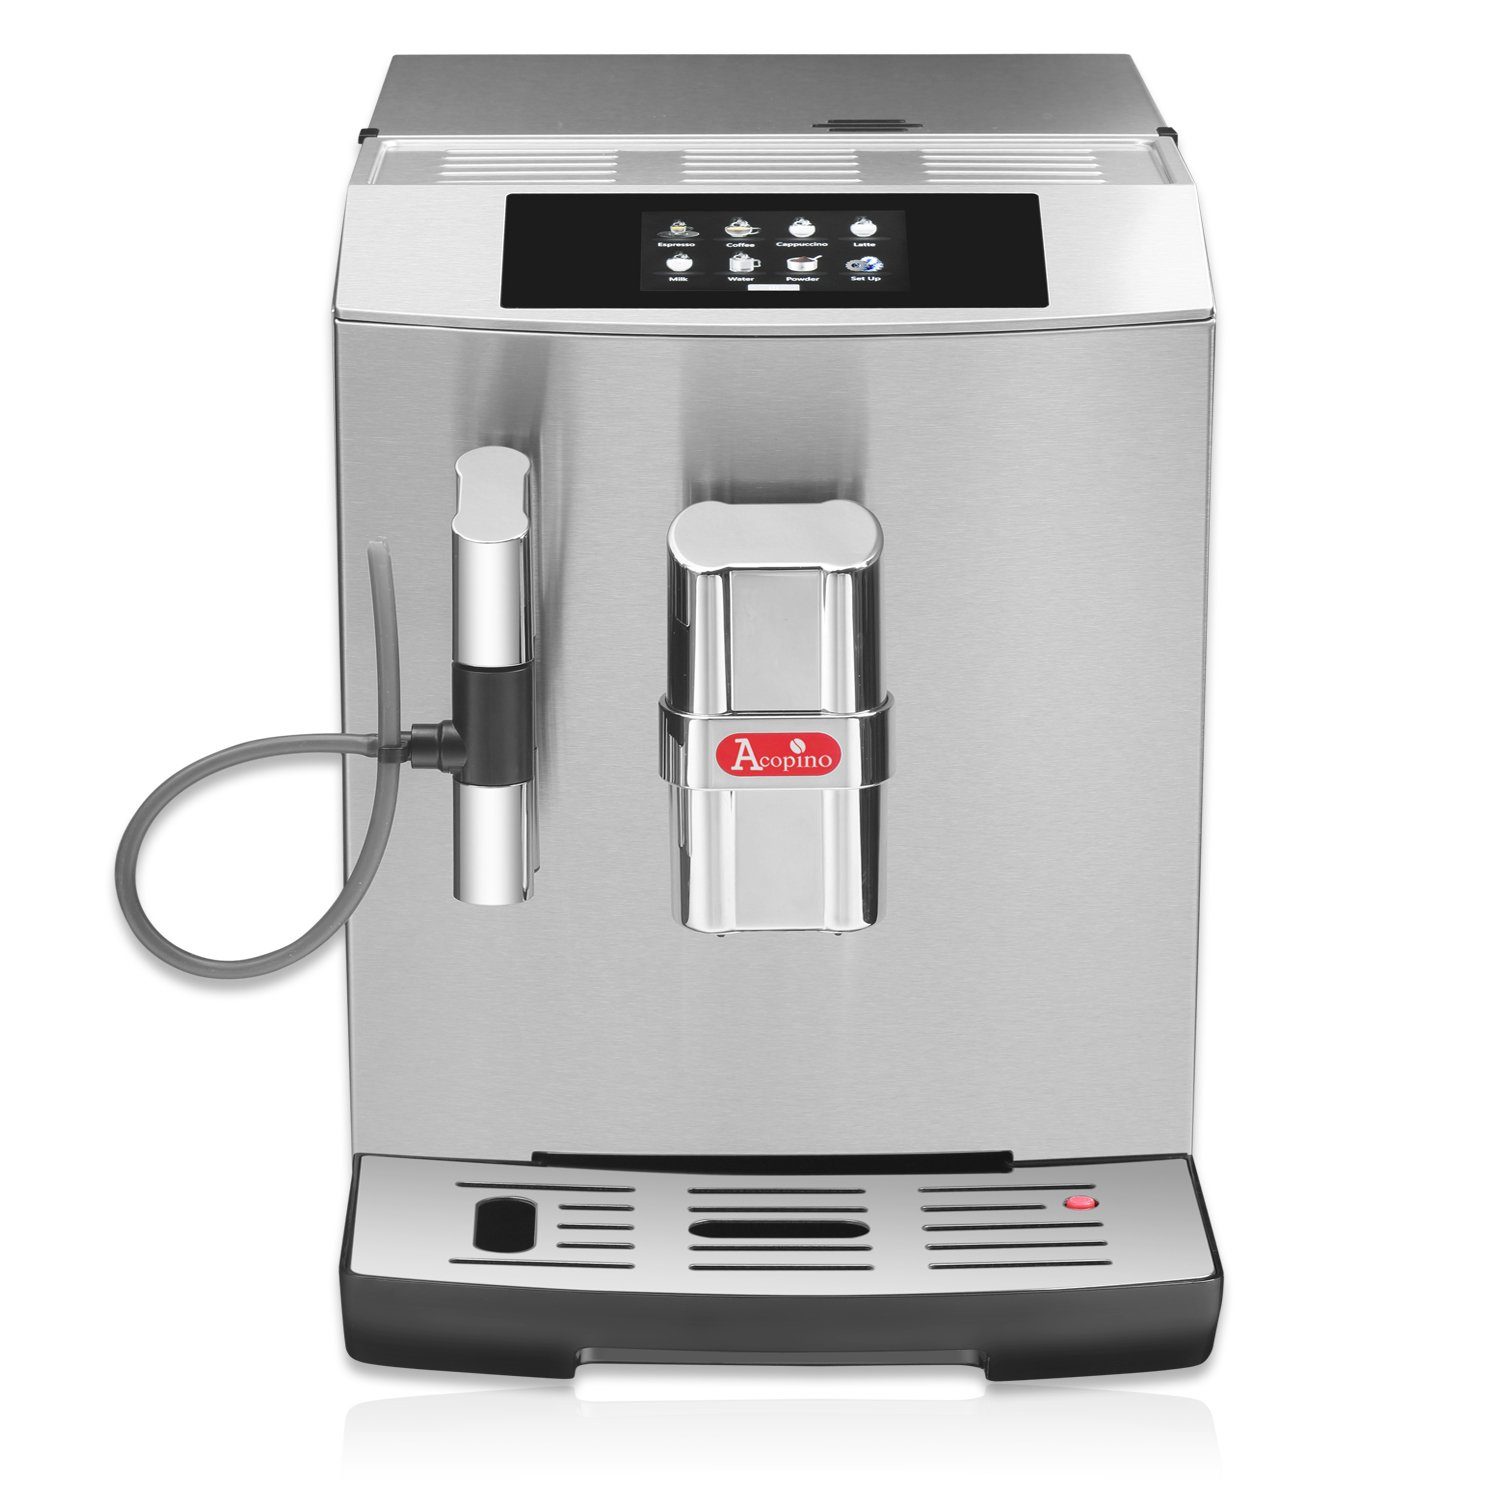 Acopino Kaffeevollautomat Modena Thermo-Milchbehälter Edition inkl. Edelstahl-Milchbehälter, Inklusive praktischem Fassungsvermögen Limited 650ml mit